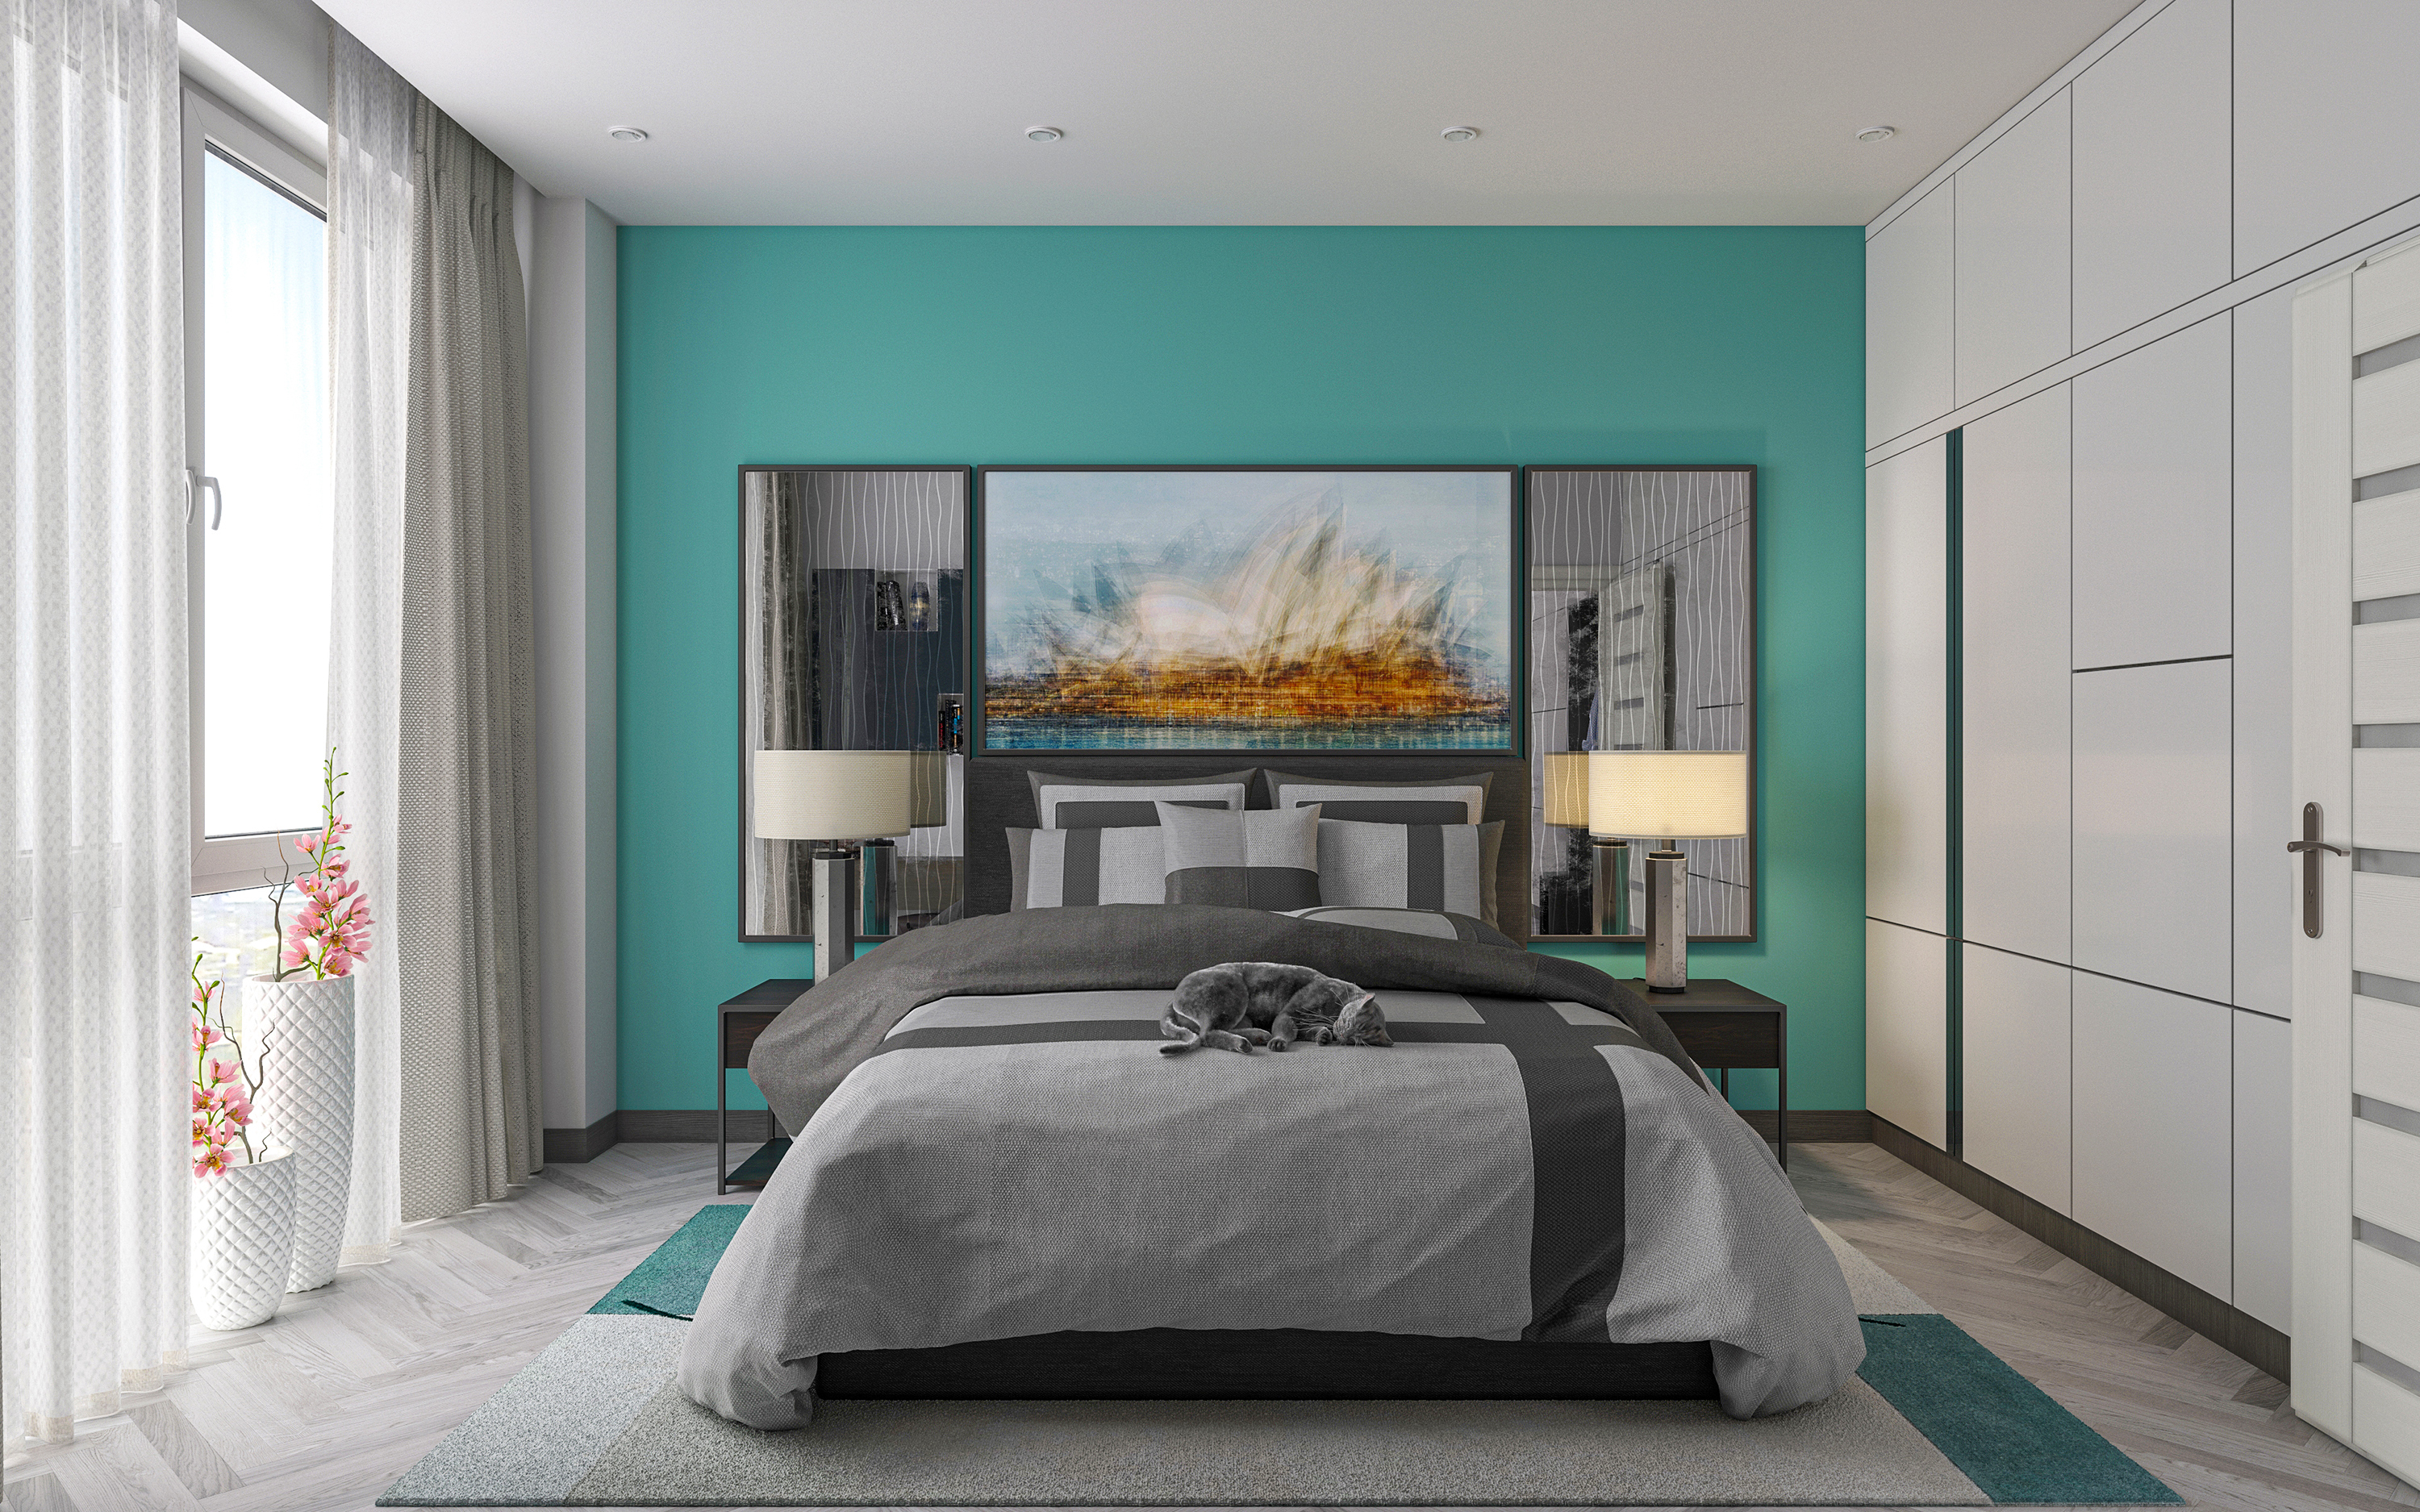 Apartamento de um quarto S66 em 3d max corona render imagem